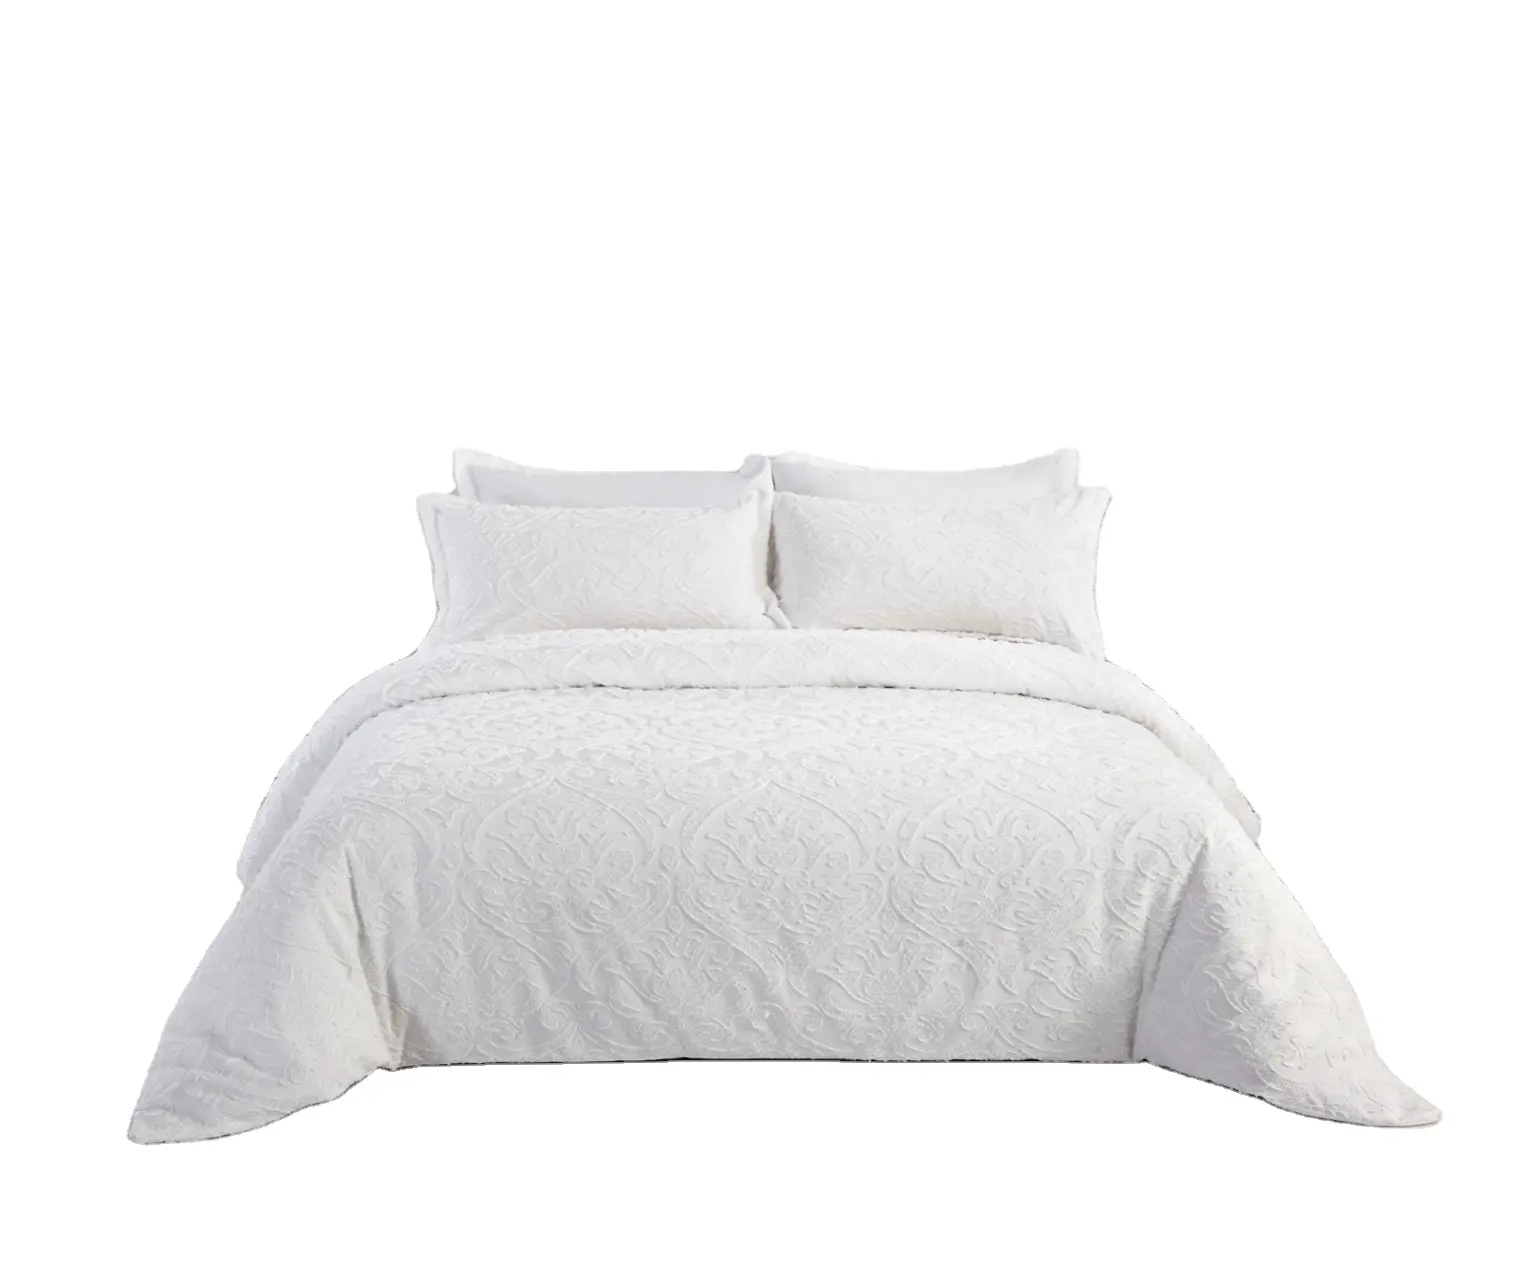 Putih mewah rumah selimut bordir 100% katun Mesir microfiber set seprai selimut penutup tempat tidur selimut nyaman queen